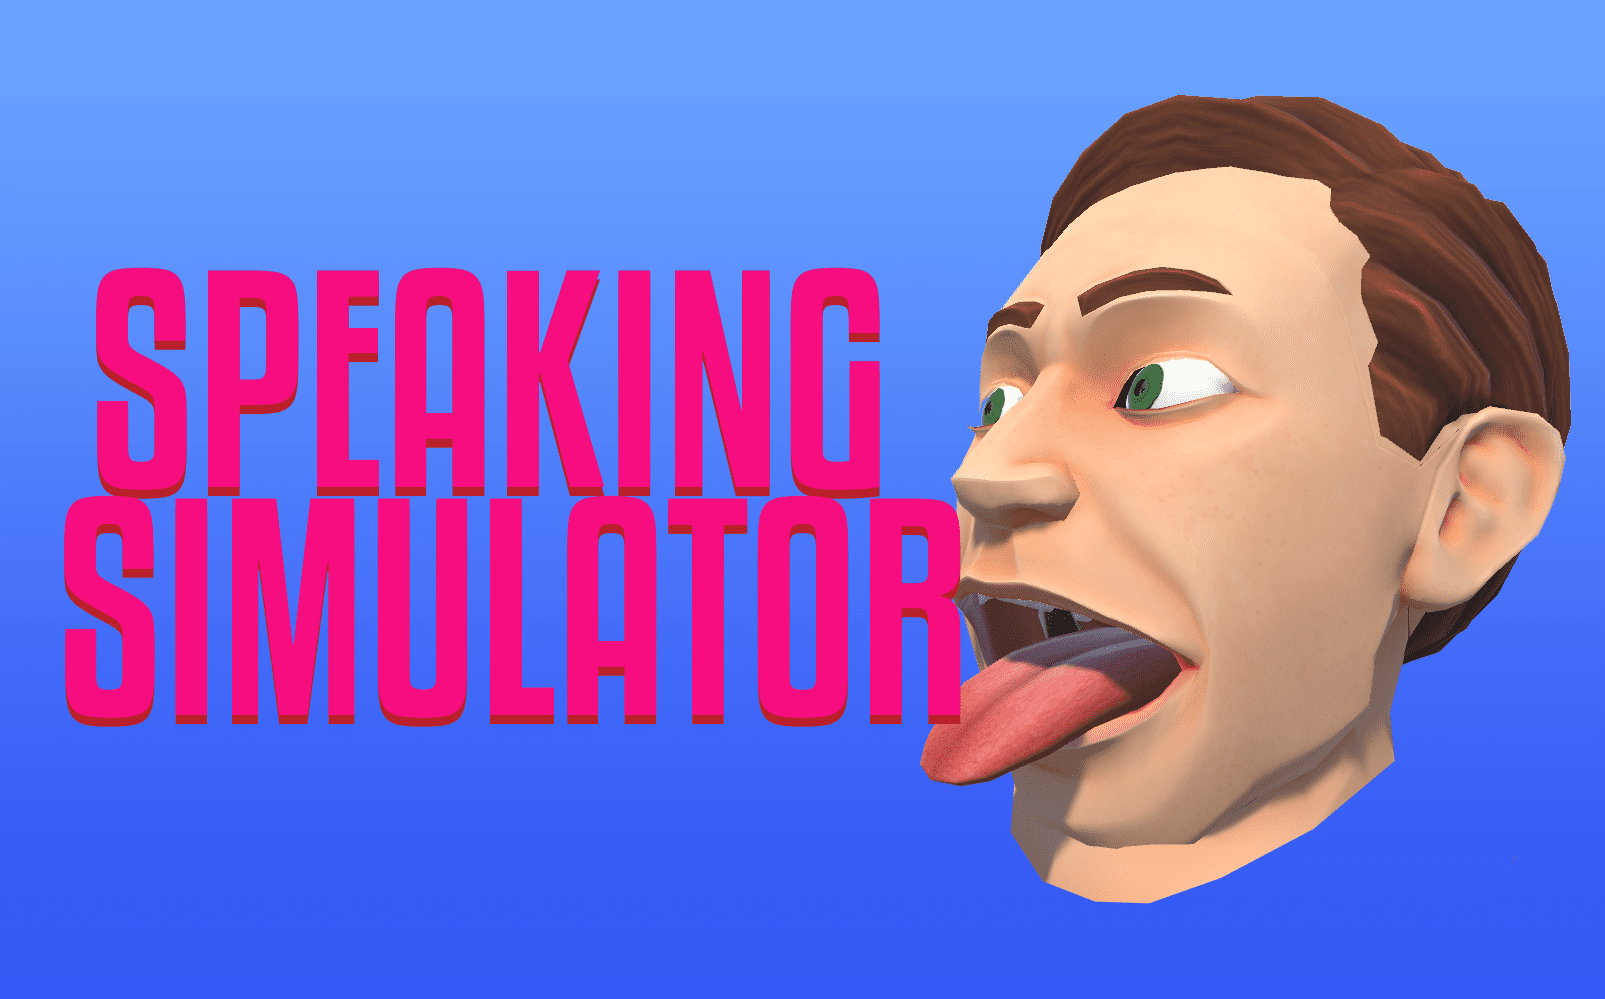 E3 2019: Speaking Simulator